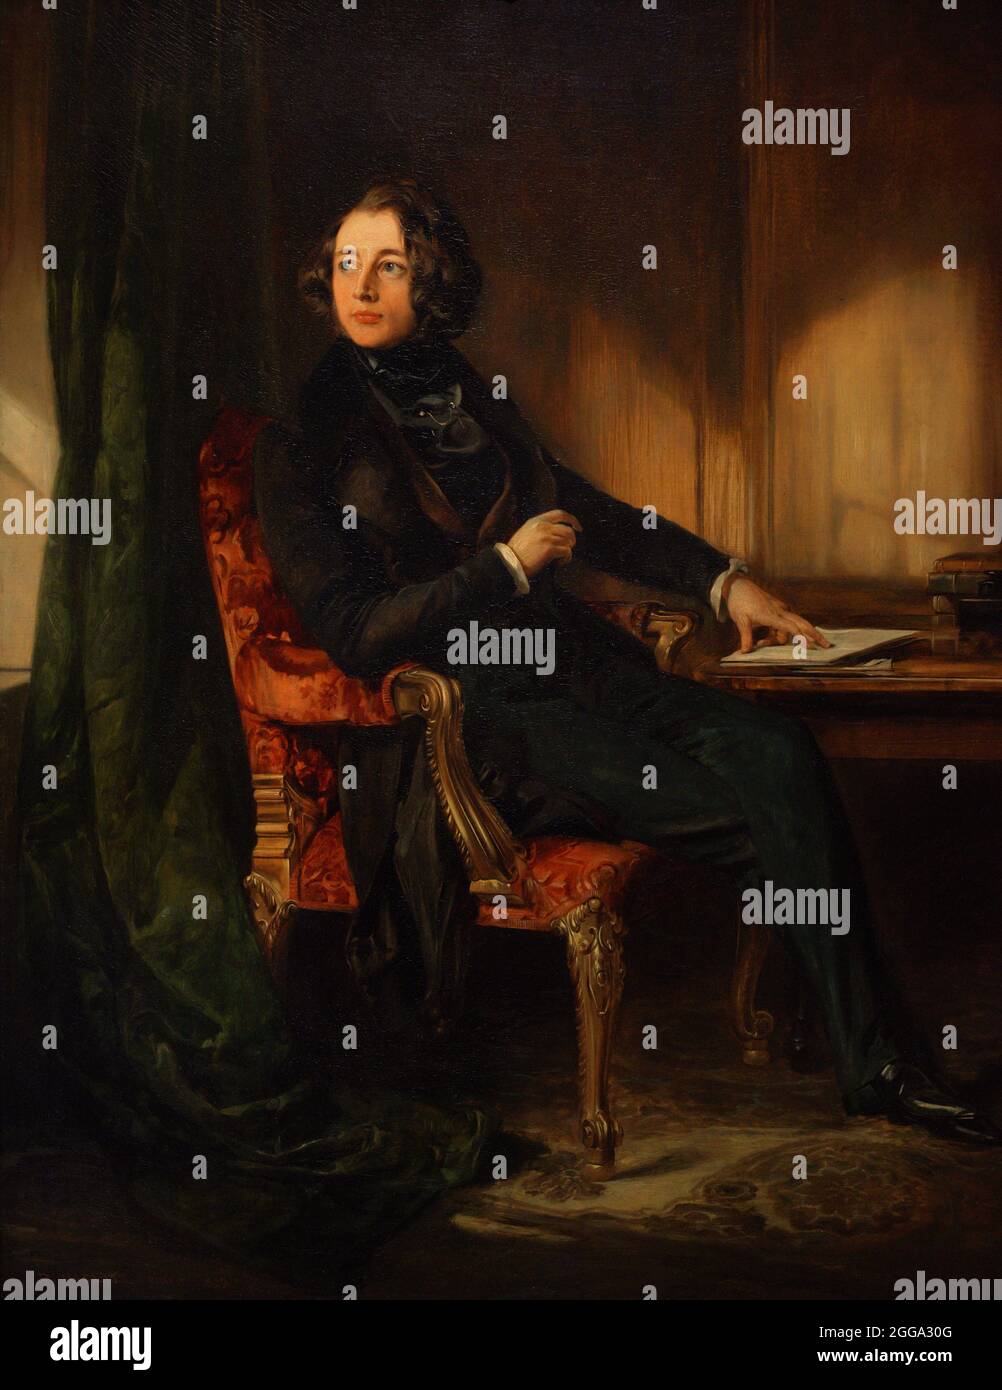 Charles Dickens (1812-1870). Romancier anglais. Portrait de Daniel Maclise (1806-1870). Huile sur toile (91,4 x 71,4 cm), 1839. Galerie nationale de portraits. Londres, Angleterre, Royaume-Uni. Banque D'Images